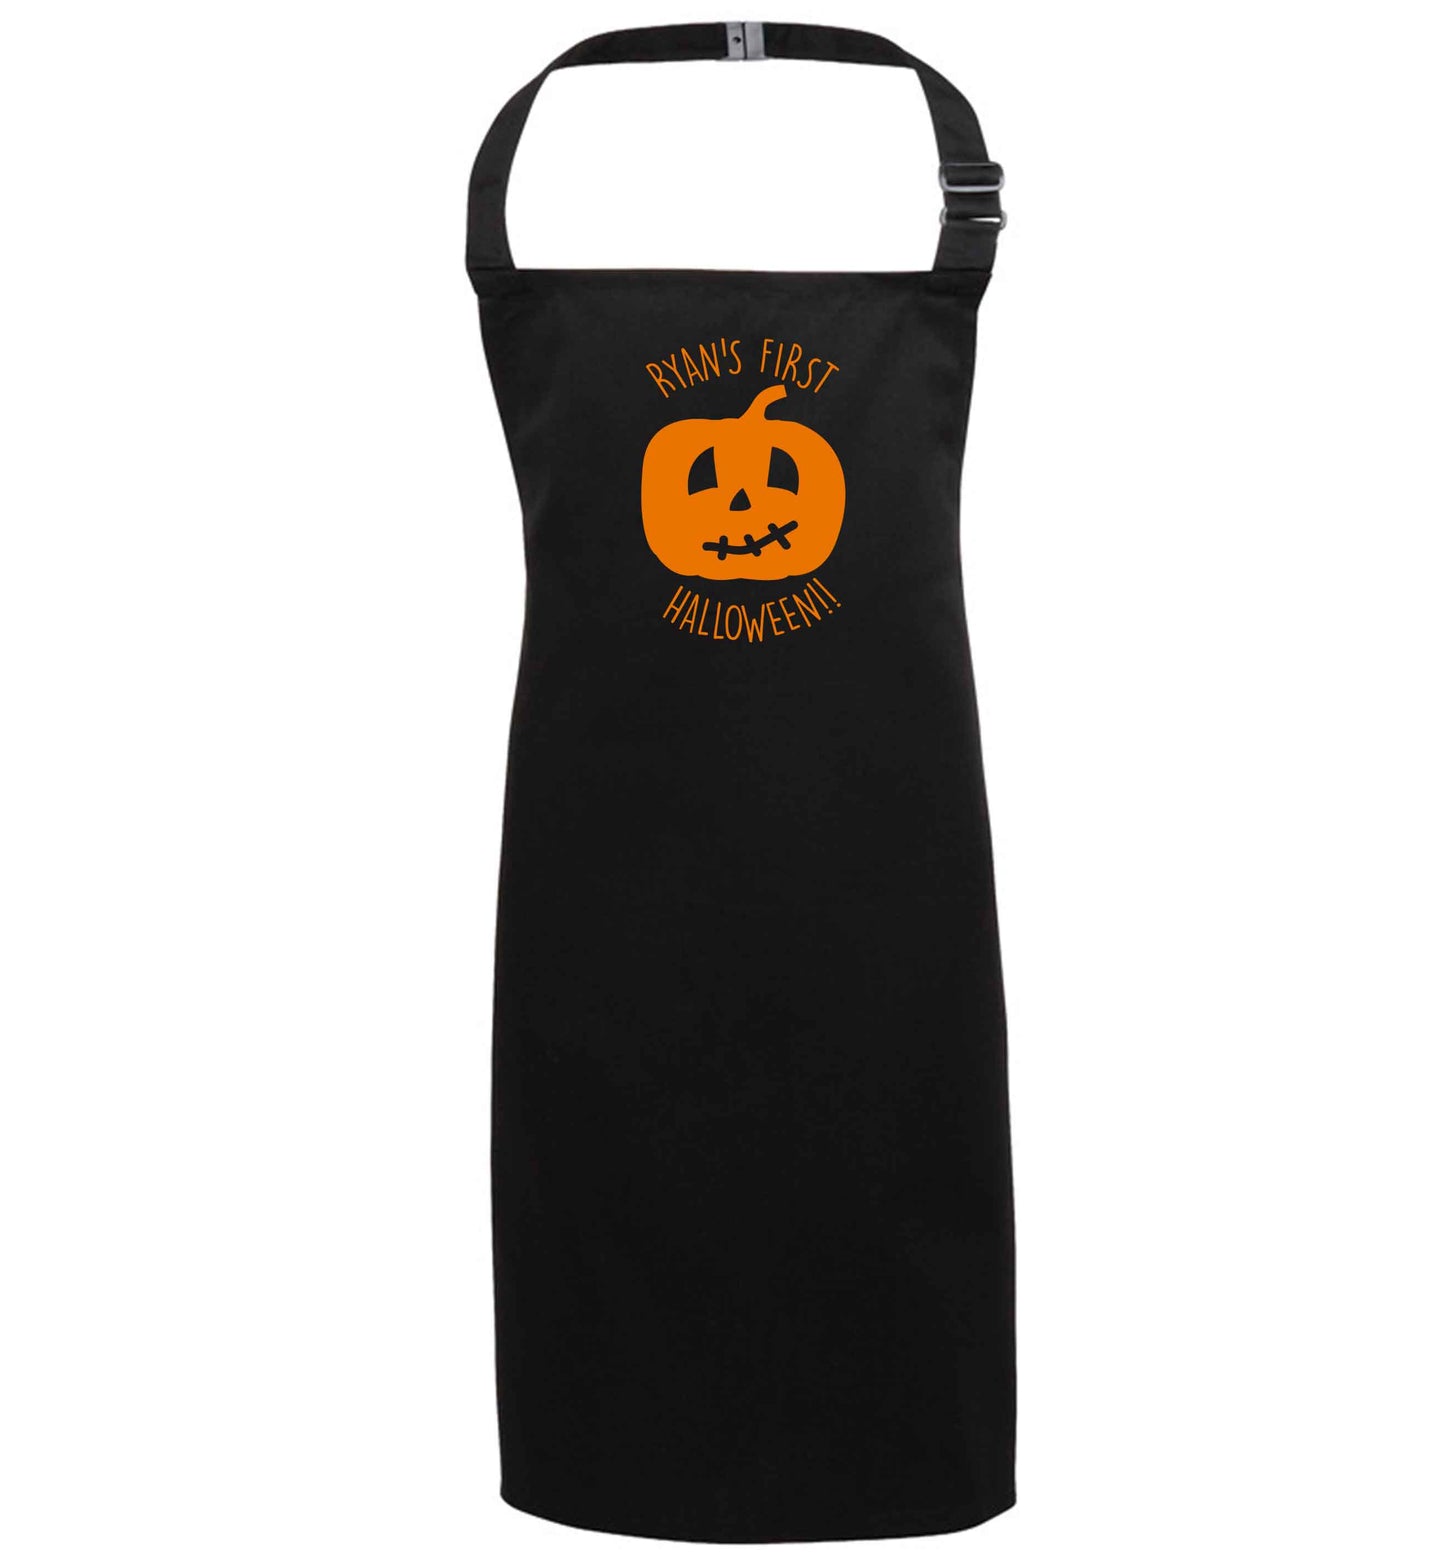 Personalised Halloween - pumpkin black apron 7-10 years